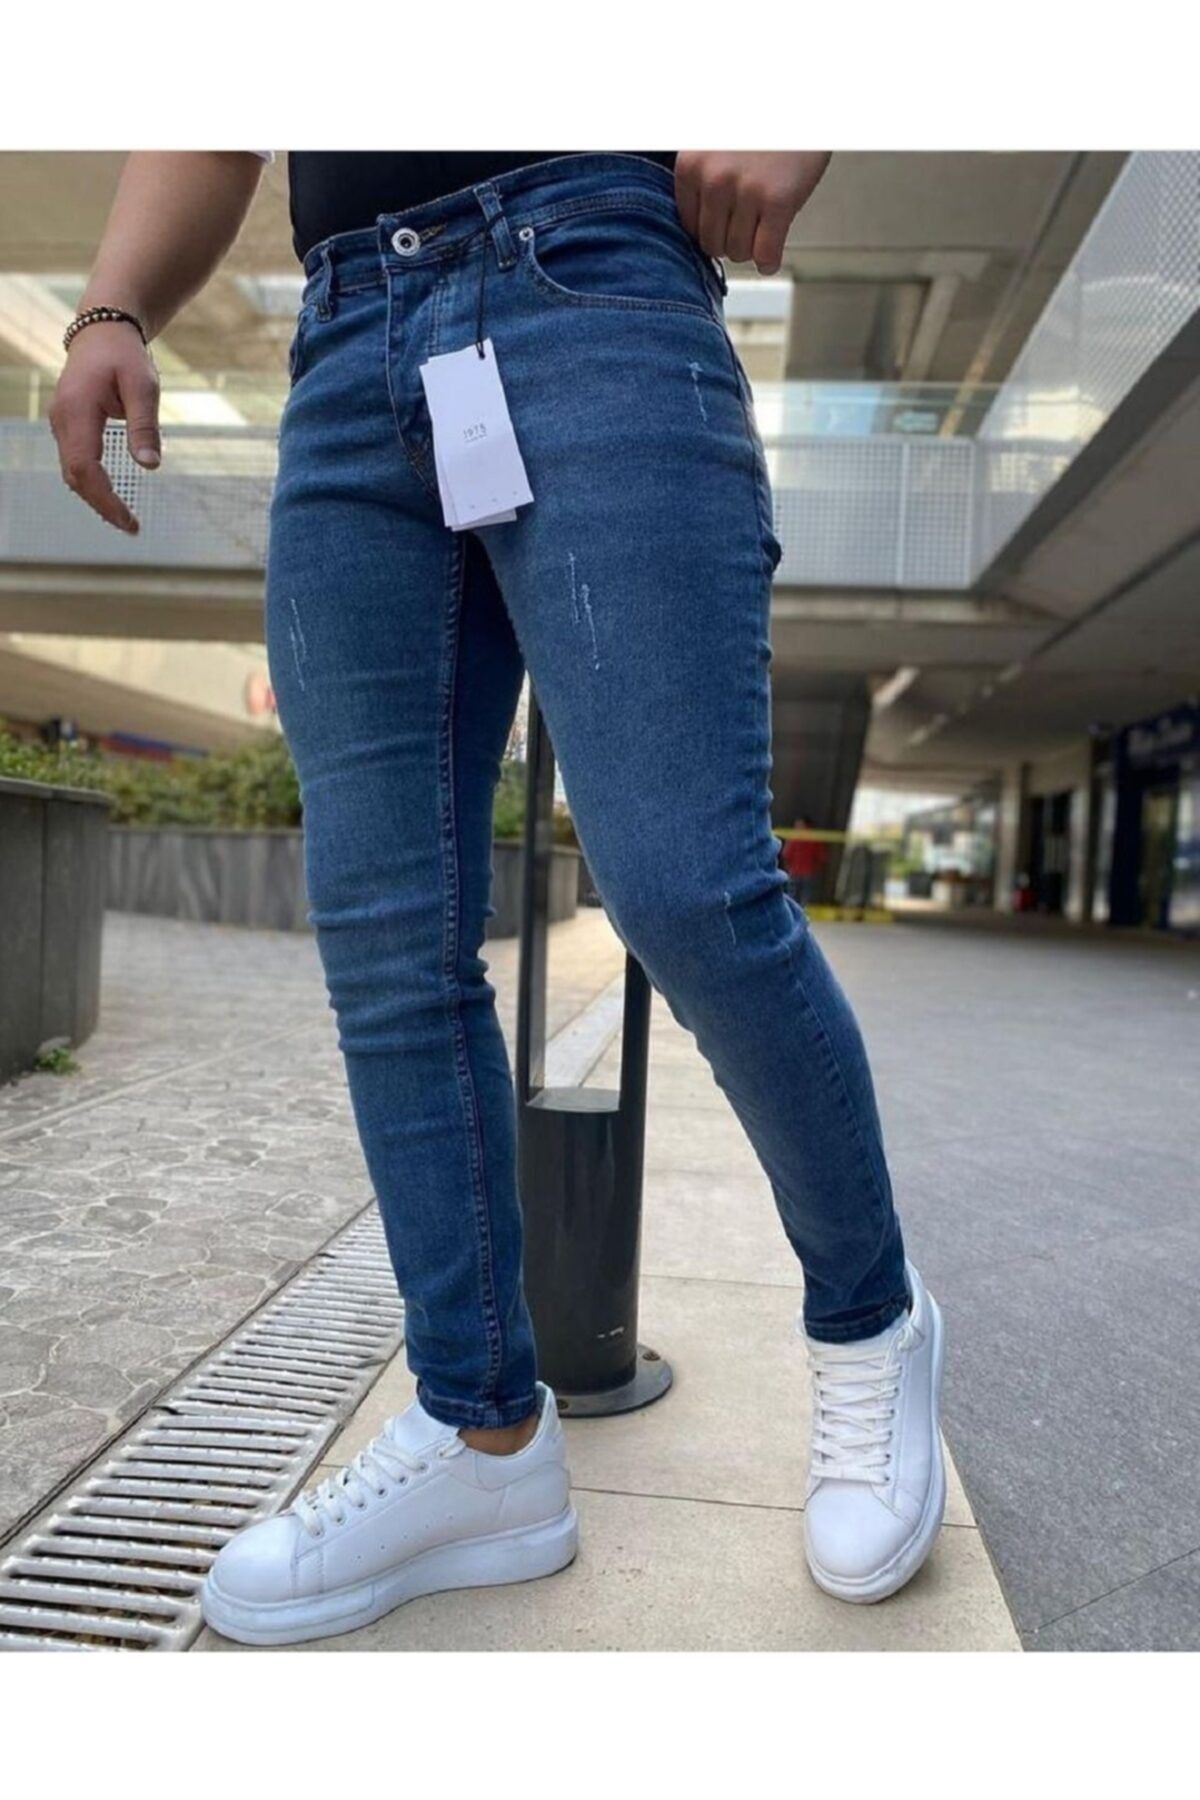 Dark Lavish Erkek Jeans Skinny Fit Likralı Açık Mavi Tırnaklı Denım Kot Pantolon